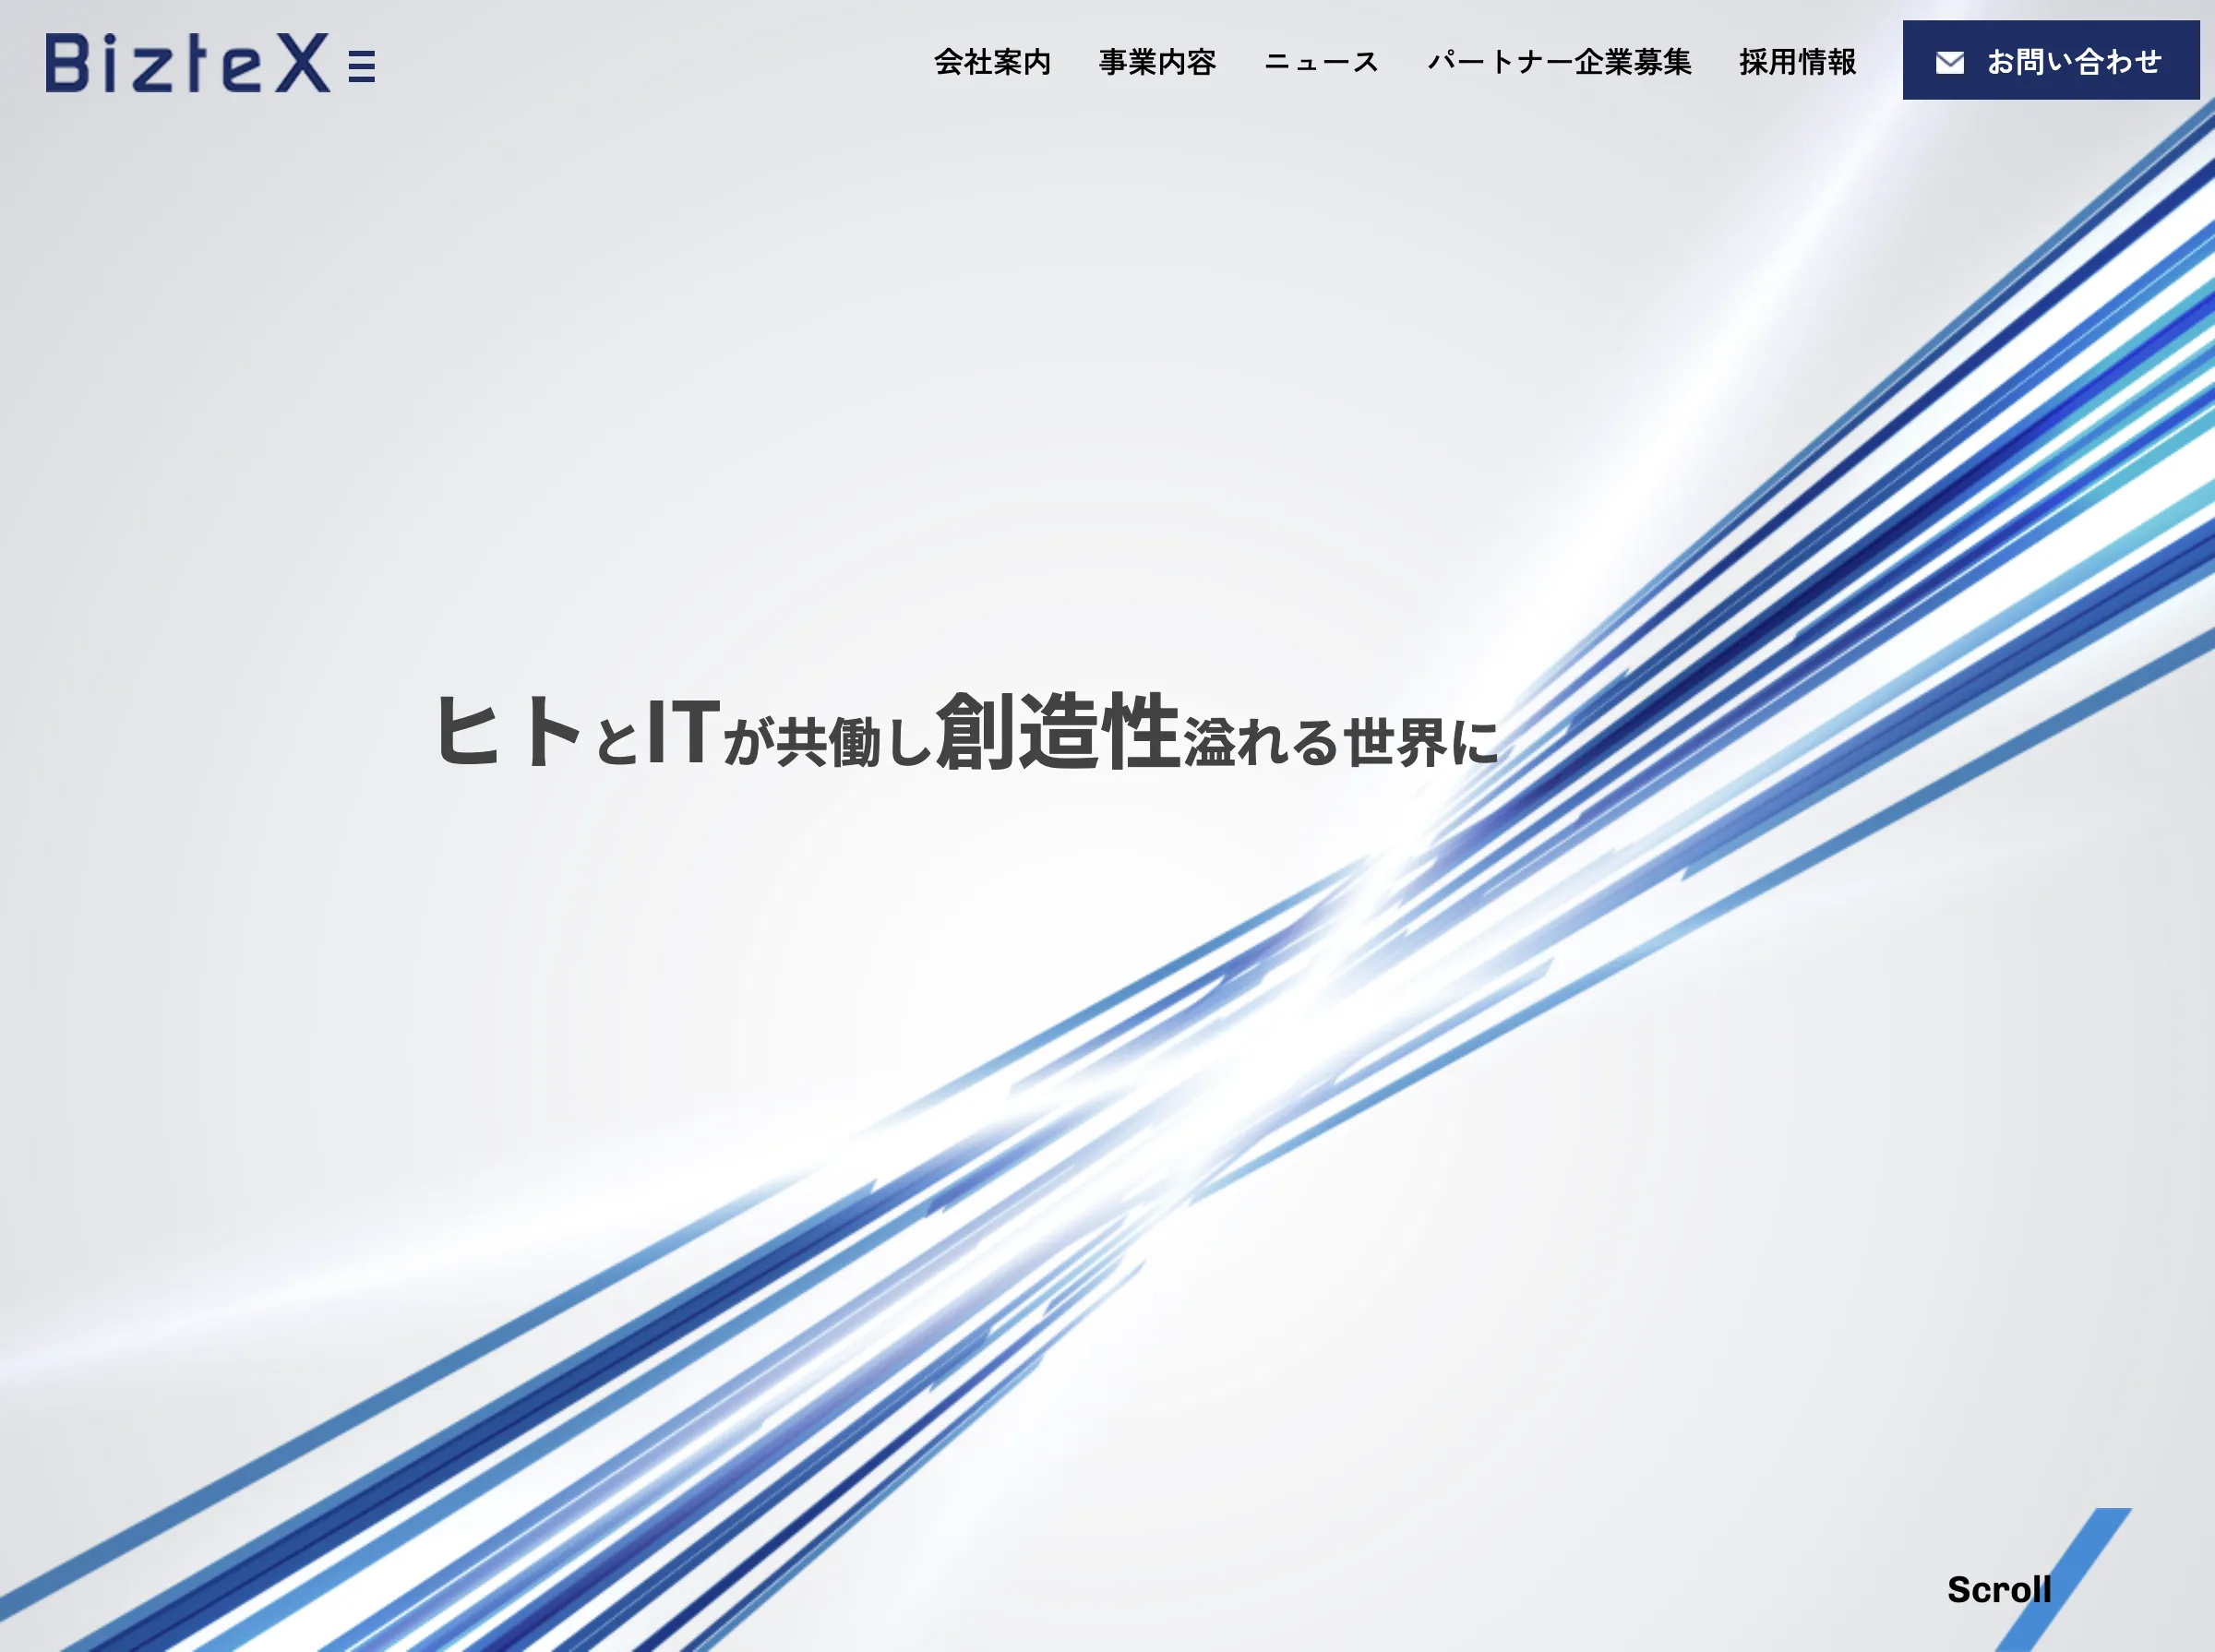 BizteX株式会社_image